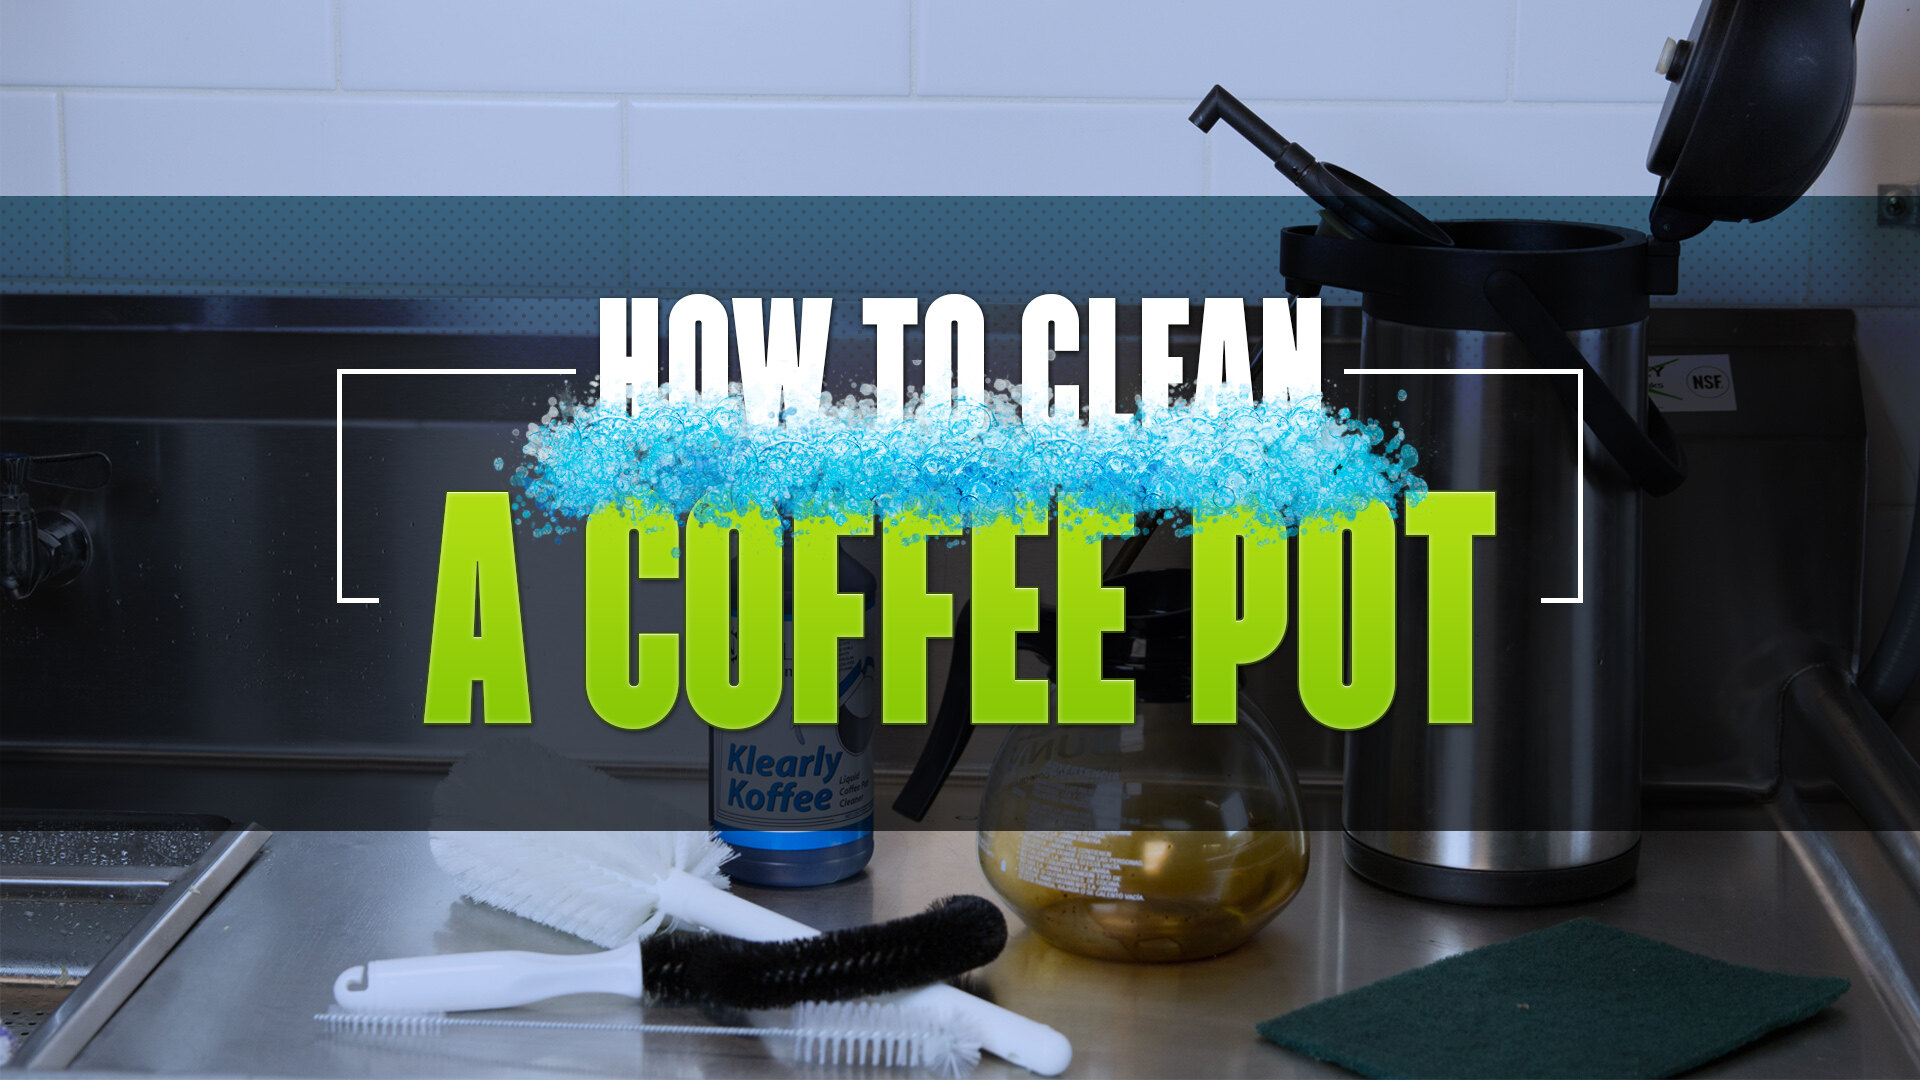 https://cdn.webstaurantstore.com/images/videos/extra_large/how-clean-coffee-pot-video.jpeg